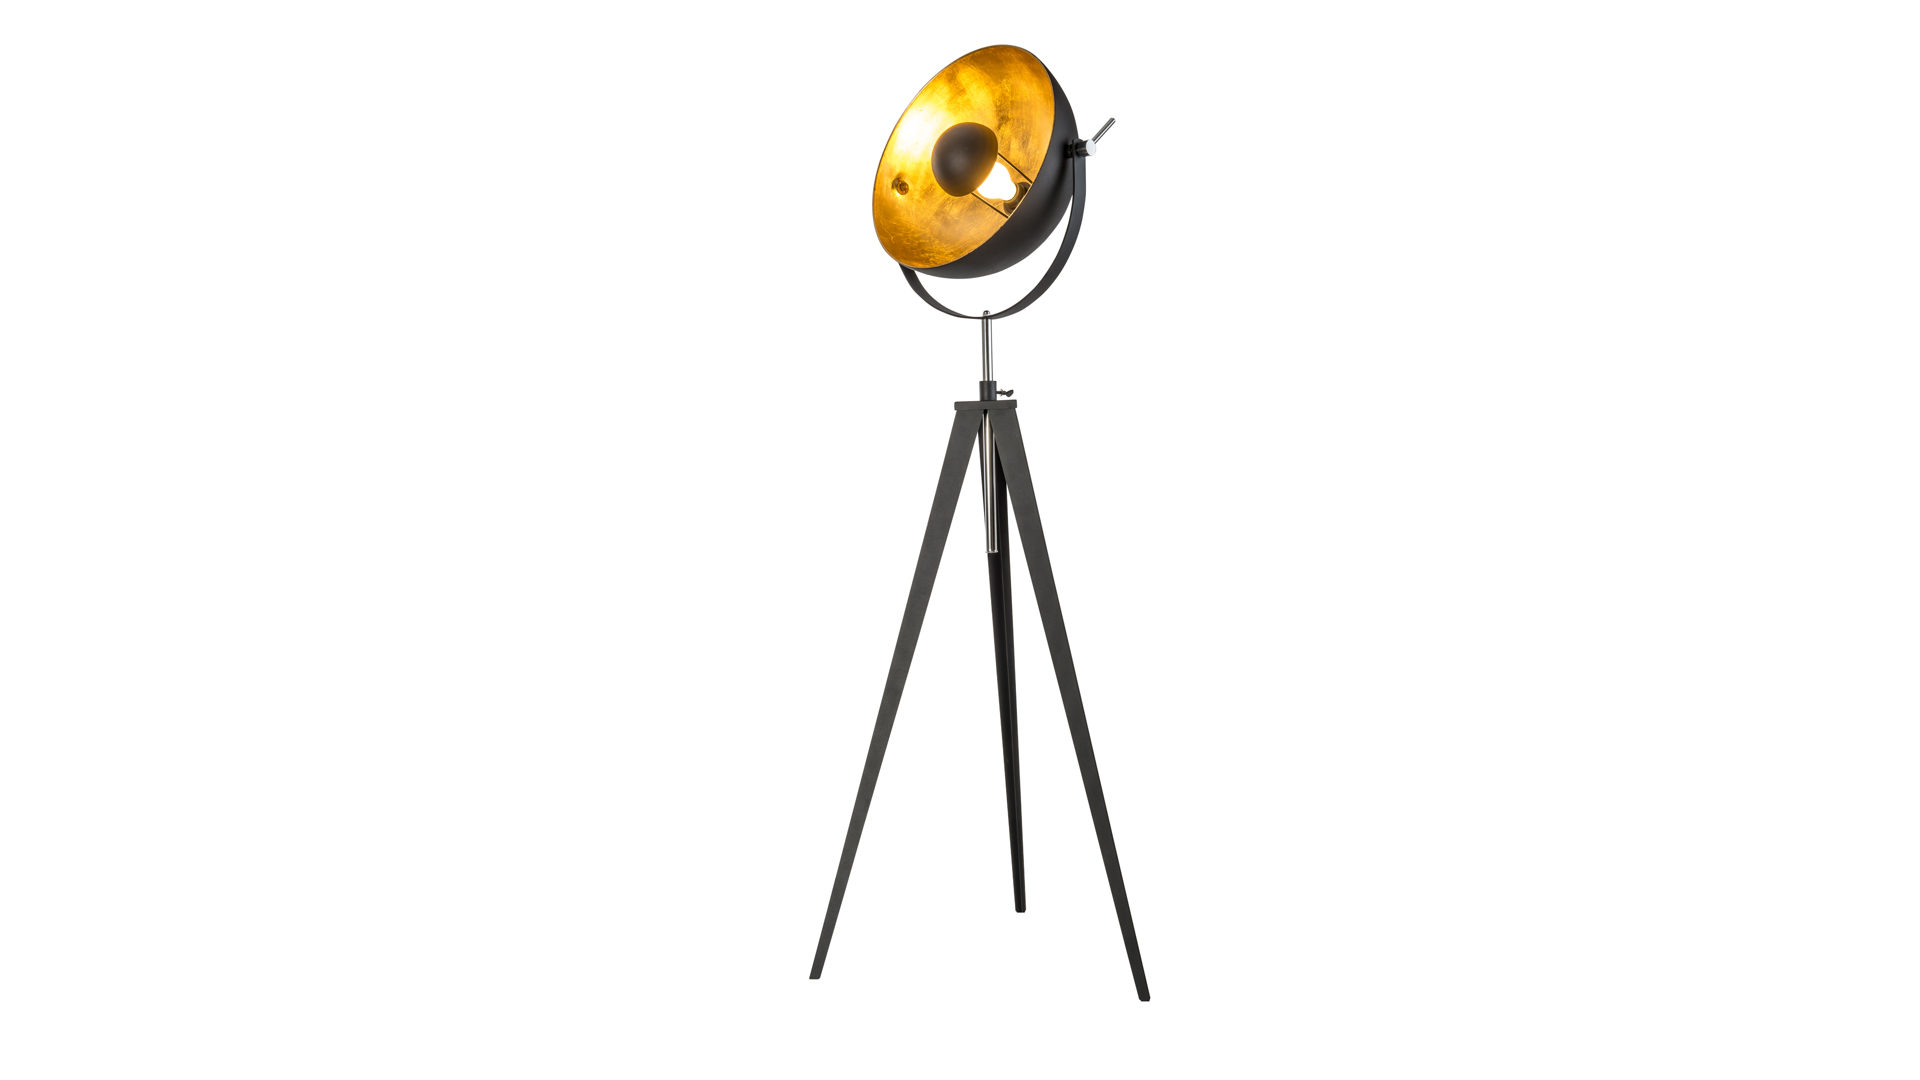 Stehleuchte Nowa (nino) aus Metall in Schwarz Stativ-Stehleuchte Bowy bzw. Stehlampe Schwarz & Gold – Höhe ca. 180 cm